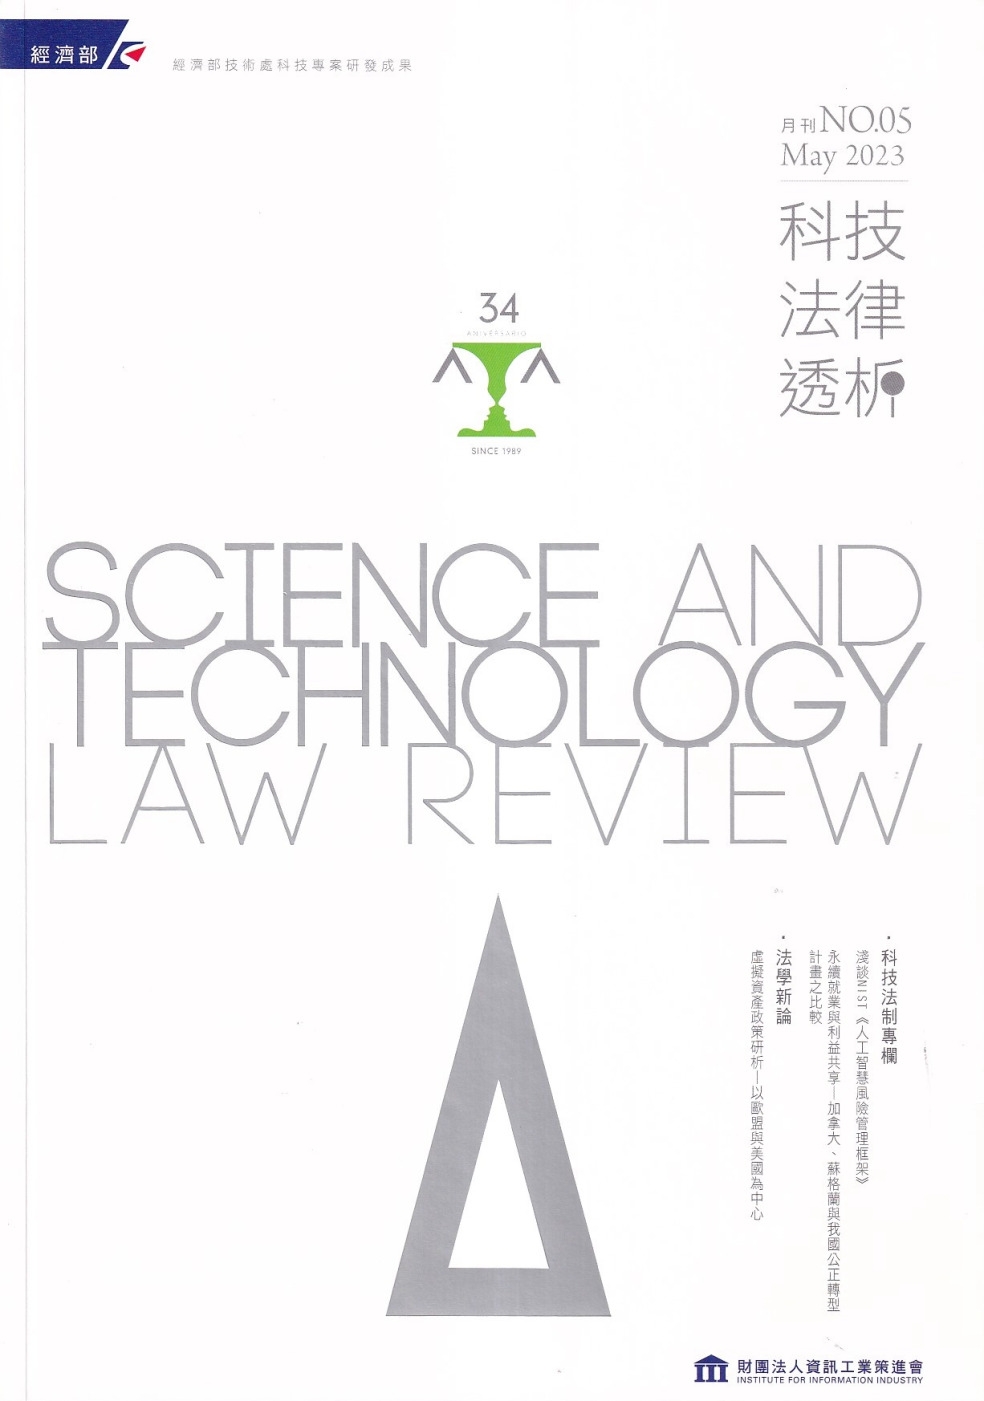 科技法律透析月刊第35卷第05期